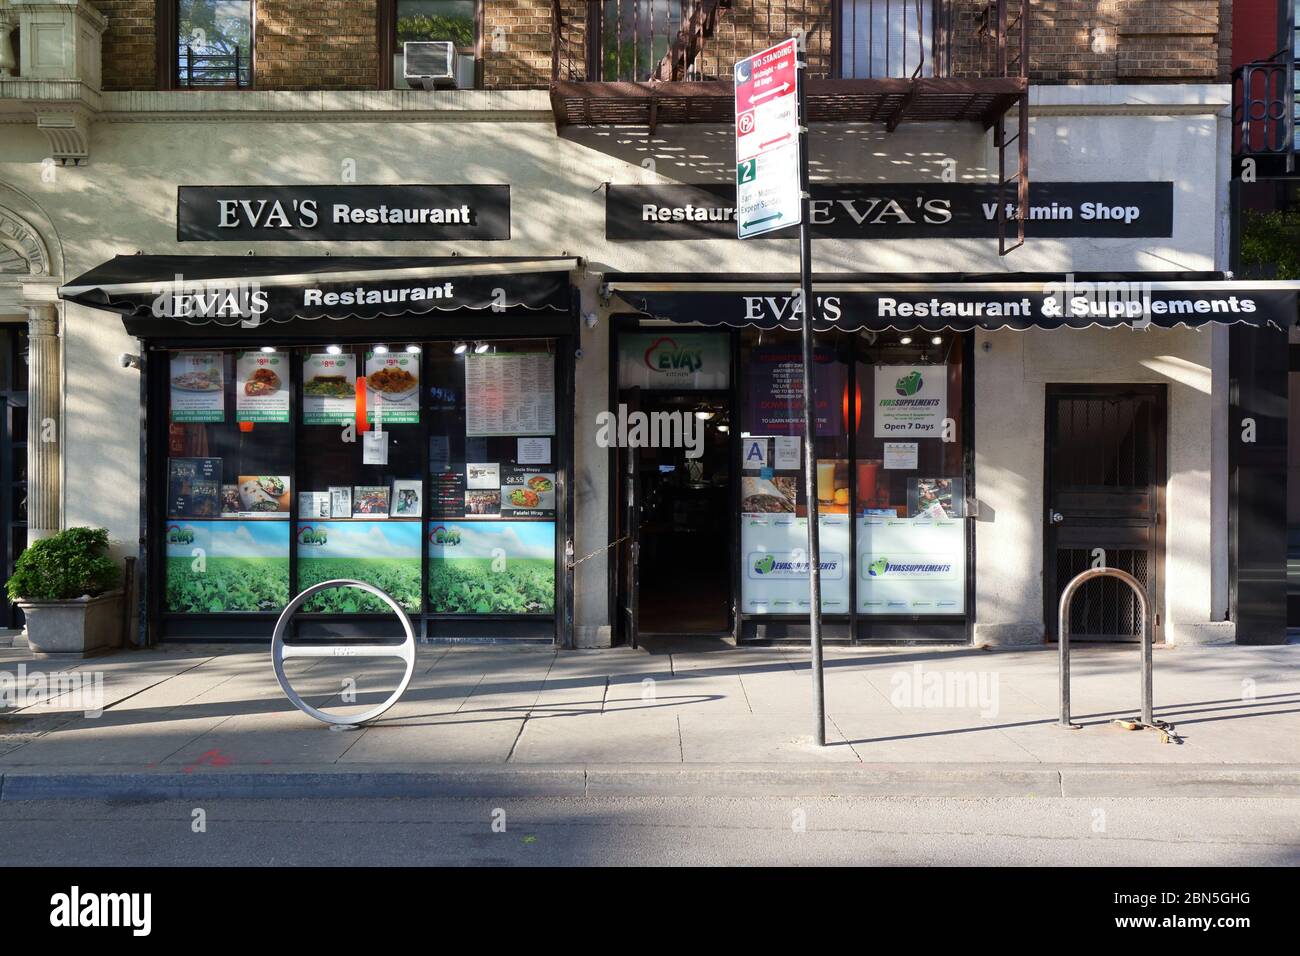 Eva's Kitchen, 11 West 8th Street, Nueva York, NY. Escaparate exterior de un restaurante de comida saludable en el barrio de Greenwich Village en Manhattan. Foto de stock